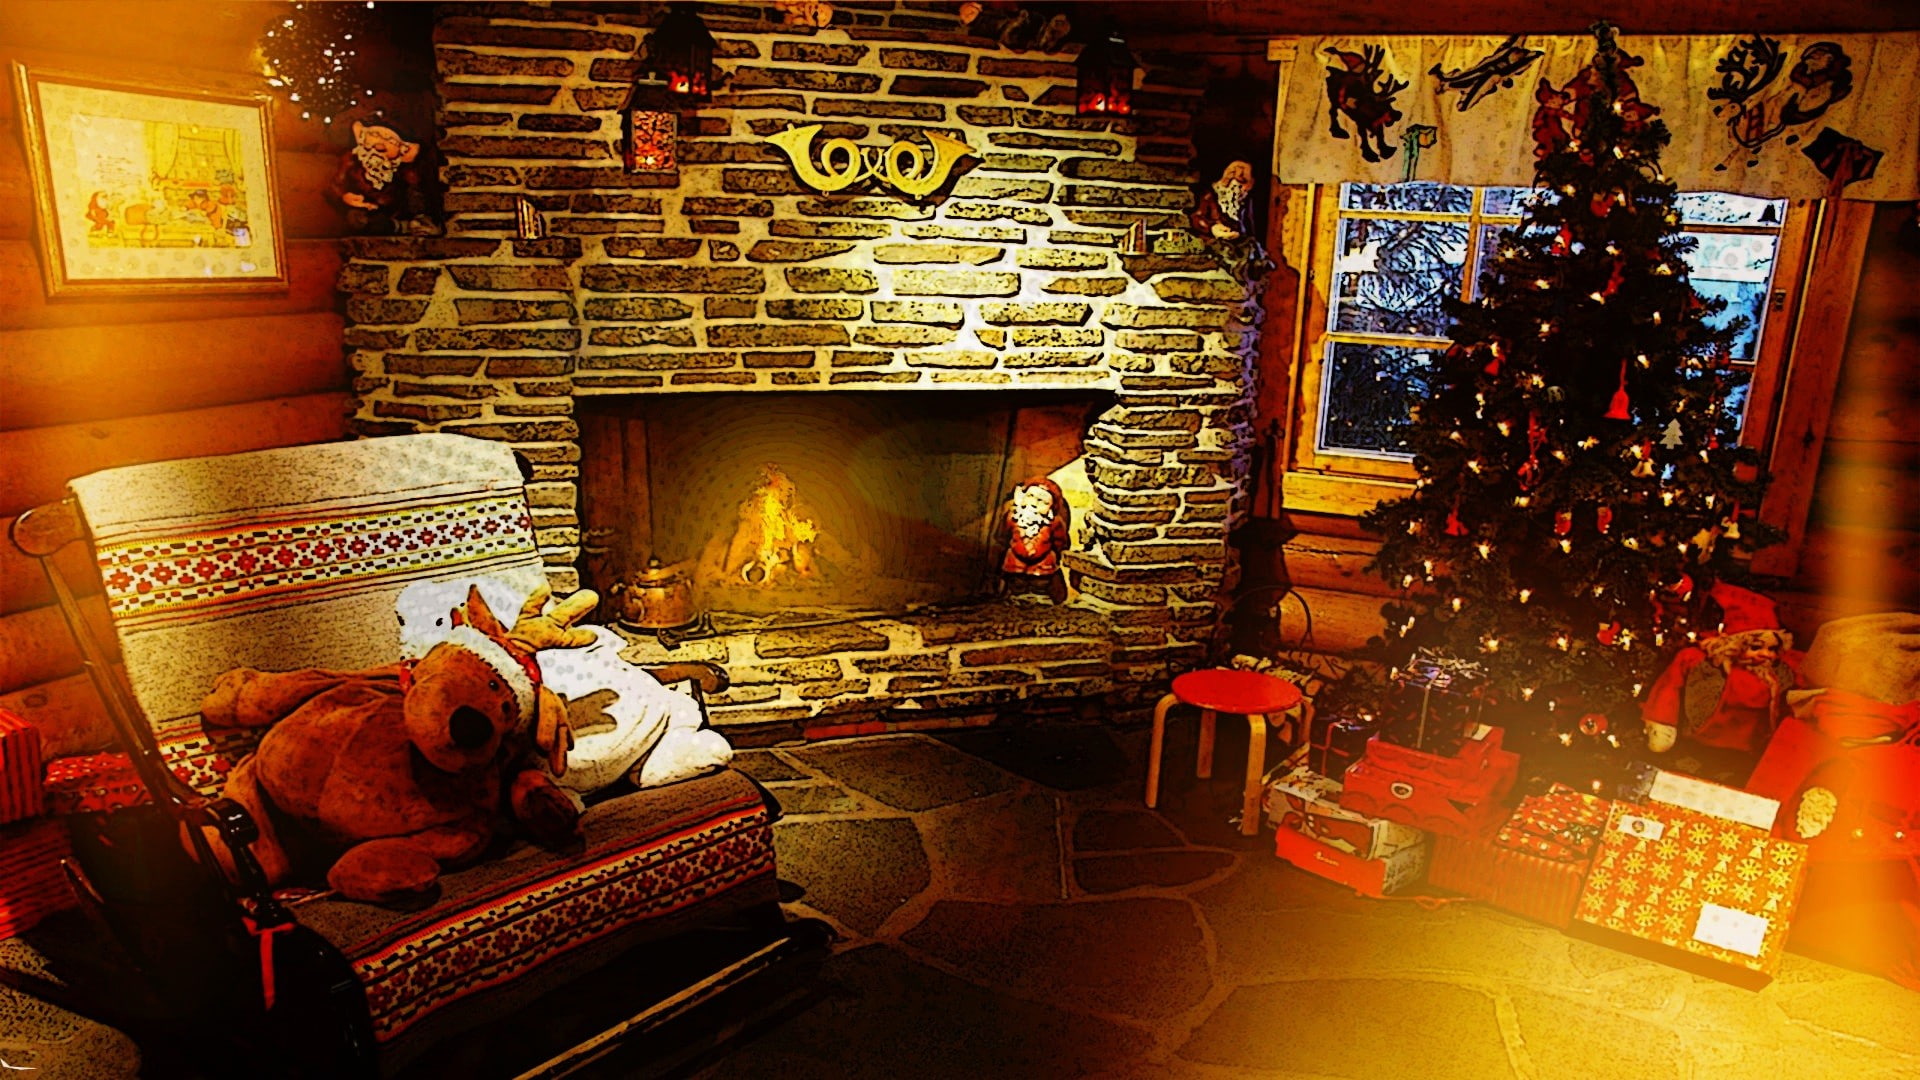 lights, fireplace, Christmas, indoors, no people, animal, animal themes